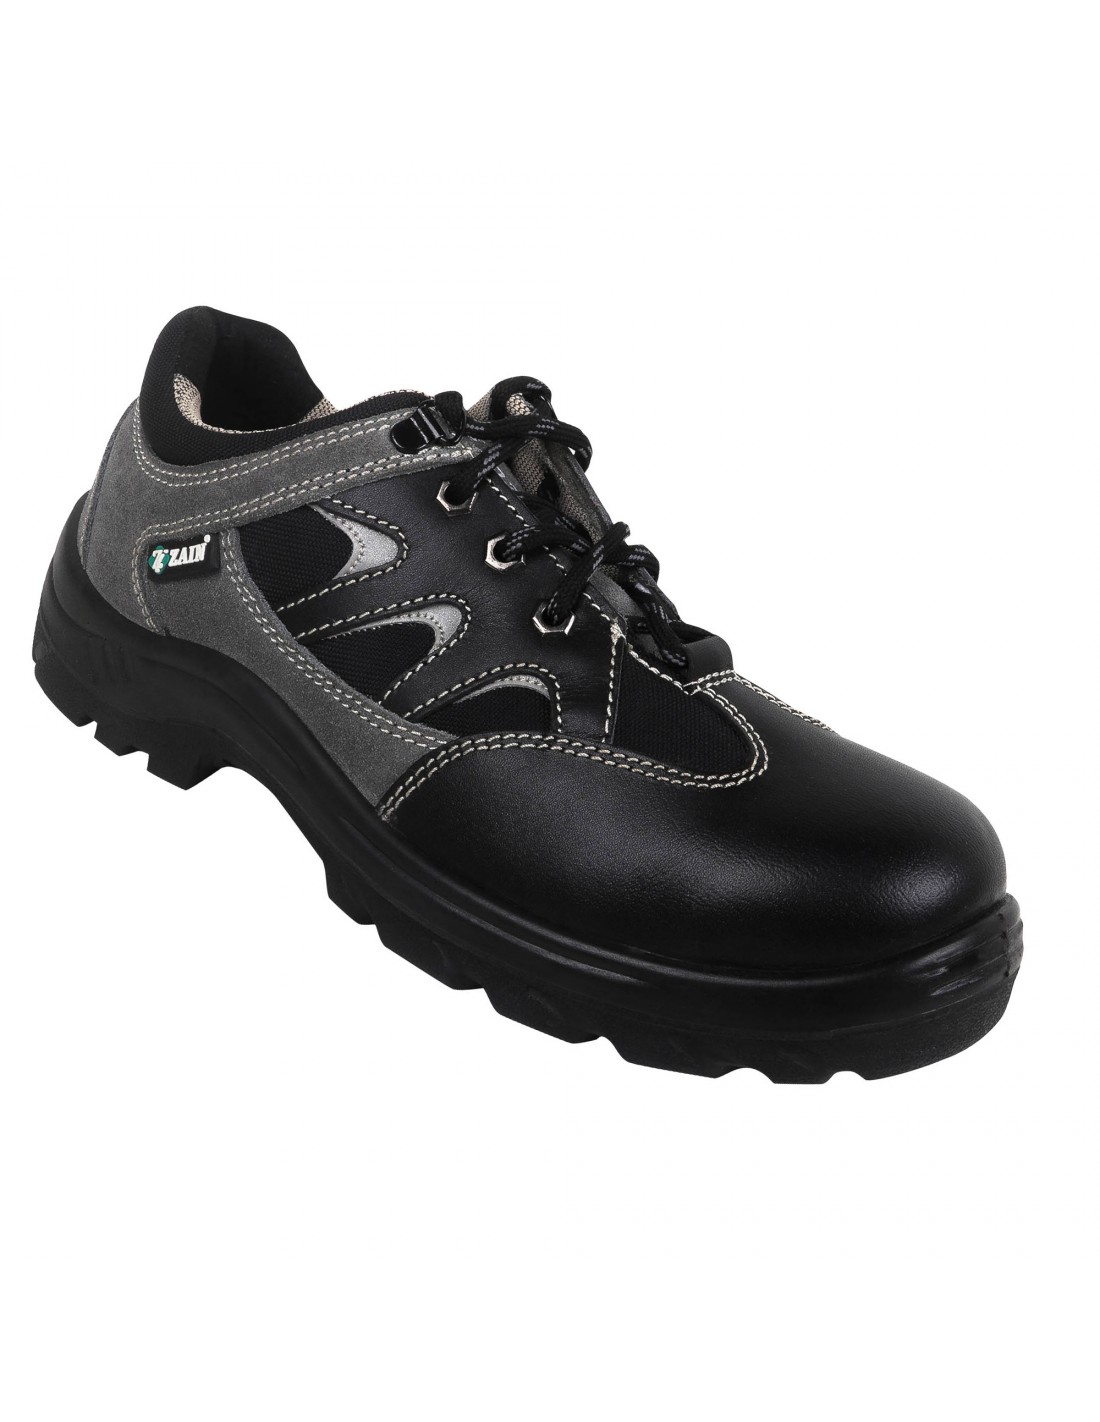 Zain ZM Dexter 82333 Sporty Safety Shoe, EN Certified 200J Steel Toe Cap,  Make In India, Oil, Acid & Water Resistant